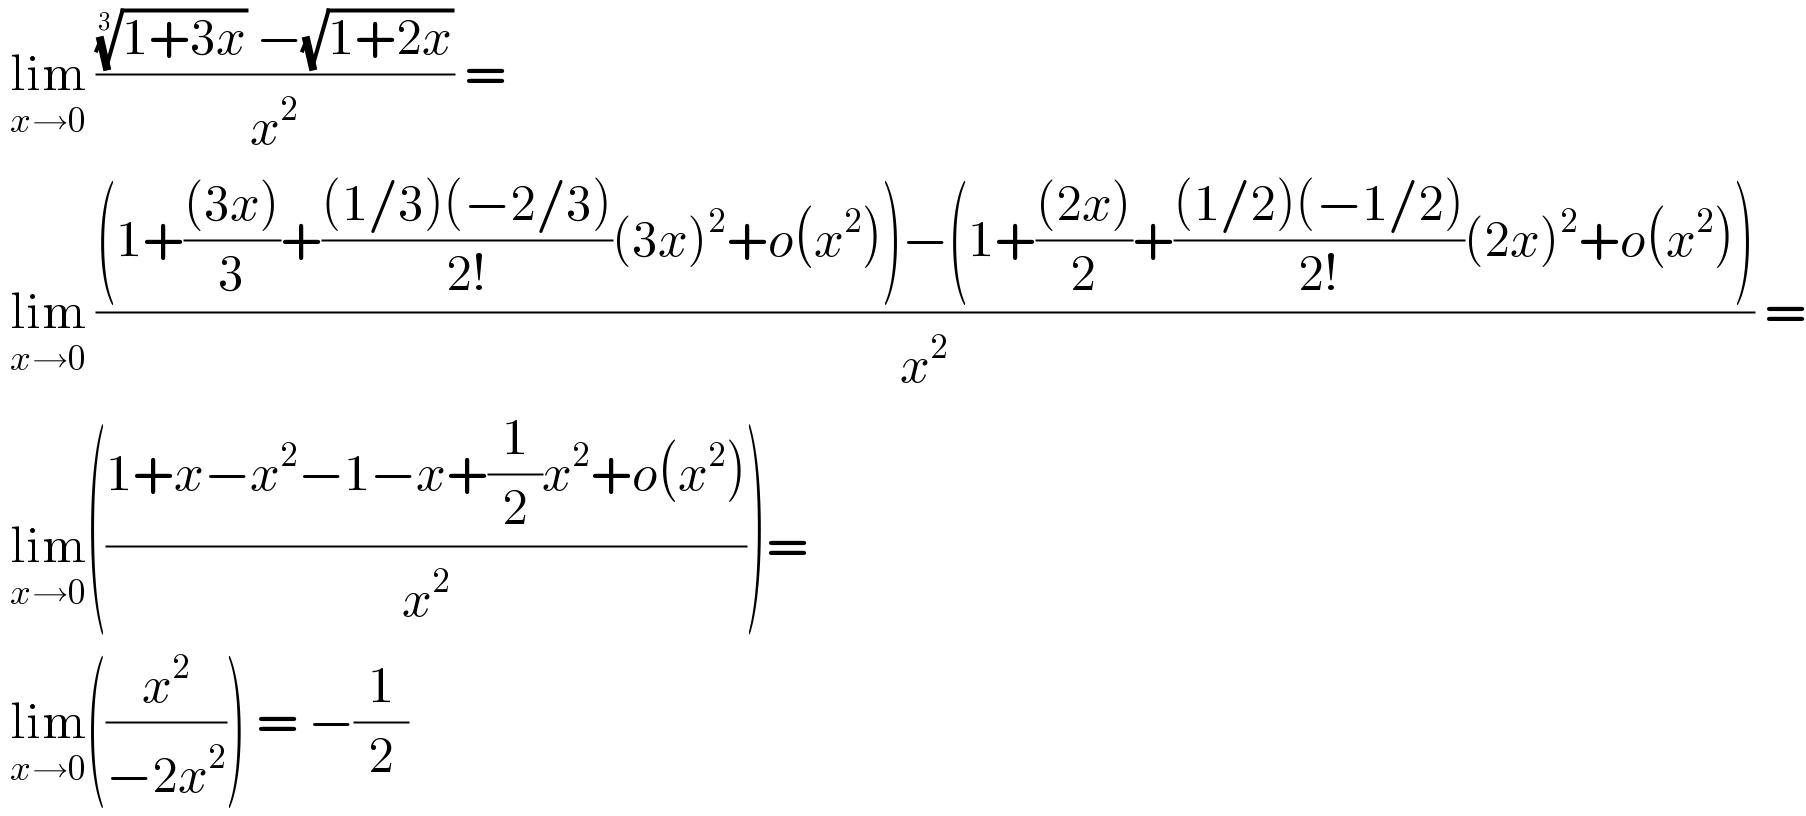  lim_(x→0)  ((((1+3x))^(1/3)  −(√(1+2x)))/x^2 ) =    lim_(x→0)  (((1+(((3x))/3)+(((1/3)(−2/3))/(2!))(3x)^2 +o(x^2 ))−(1+(((2x))/2)+(((1/2)(−1/2))/(2!))(2x)^2 +o(x^2 )))/x^2 ) =   lim_(x→0) (((1+x−x^2 −1−x+(1/2)x^2 +o(x^2 ))/x^2 ))=   lim_(x→0) ((x^2 /(−2x^2 ))) = −(1/2)  